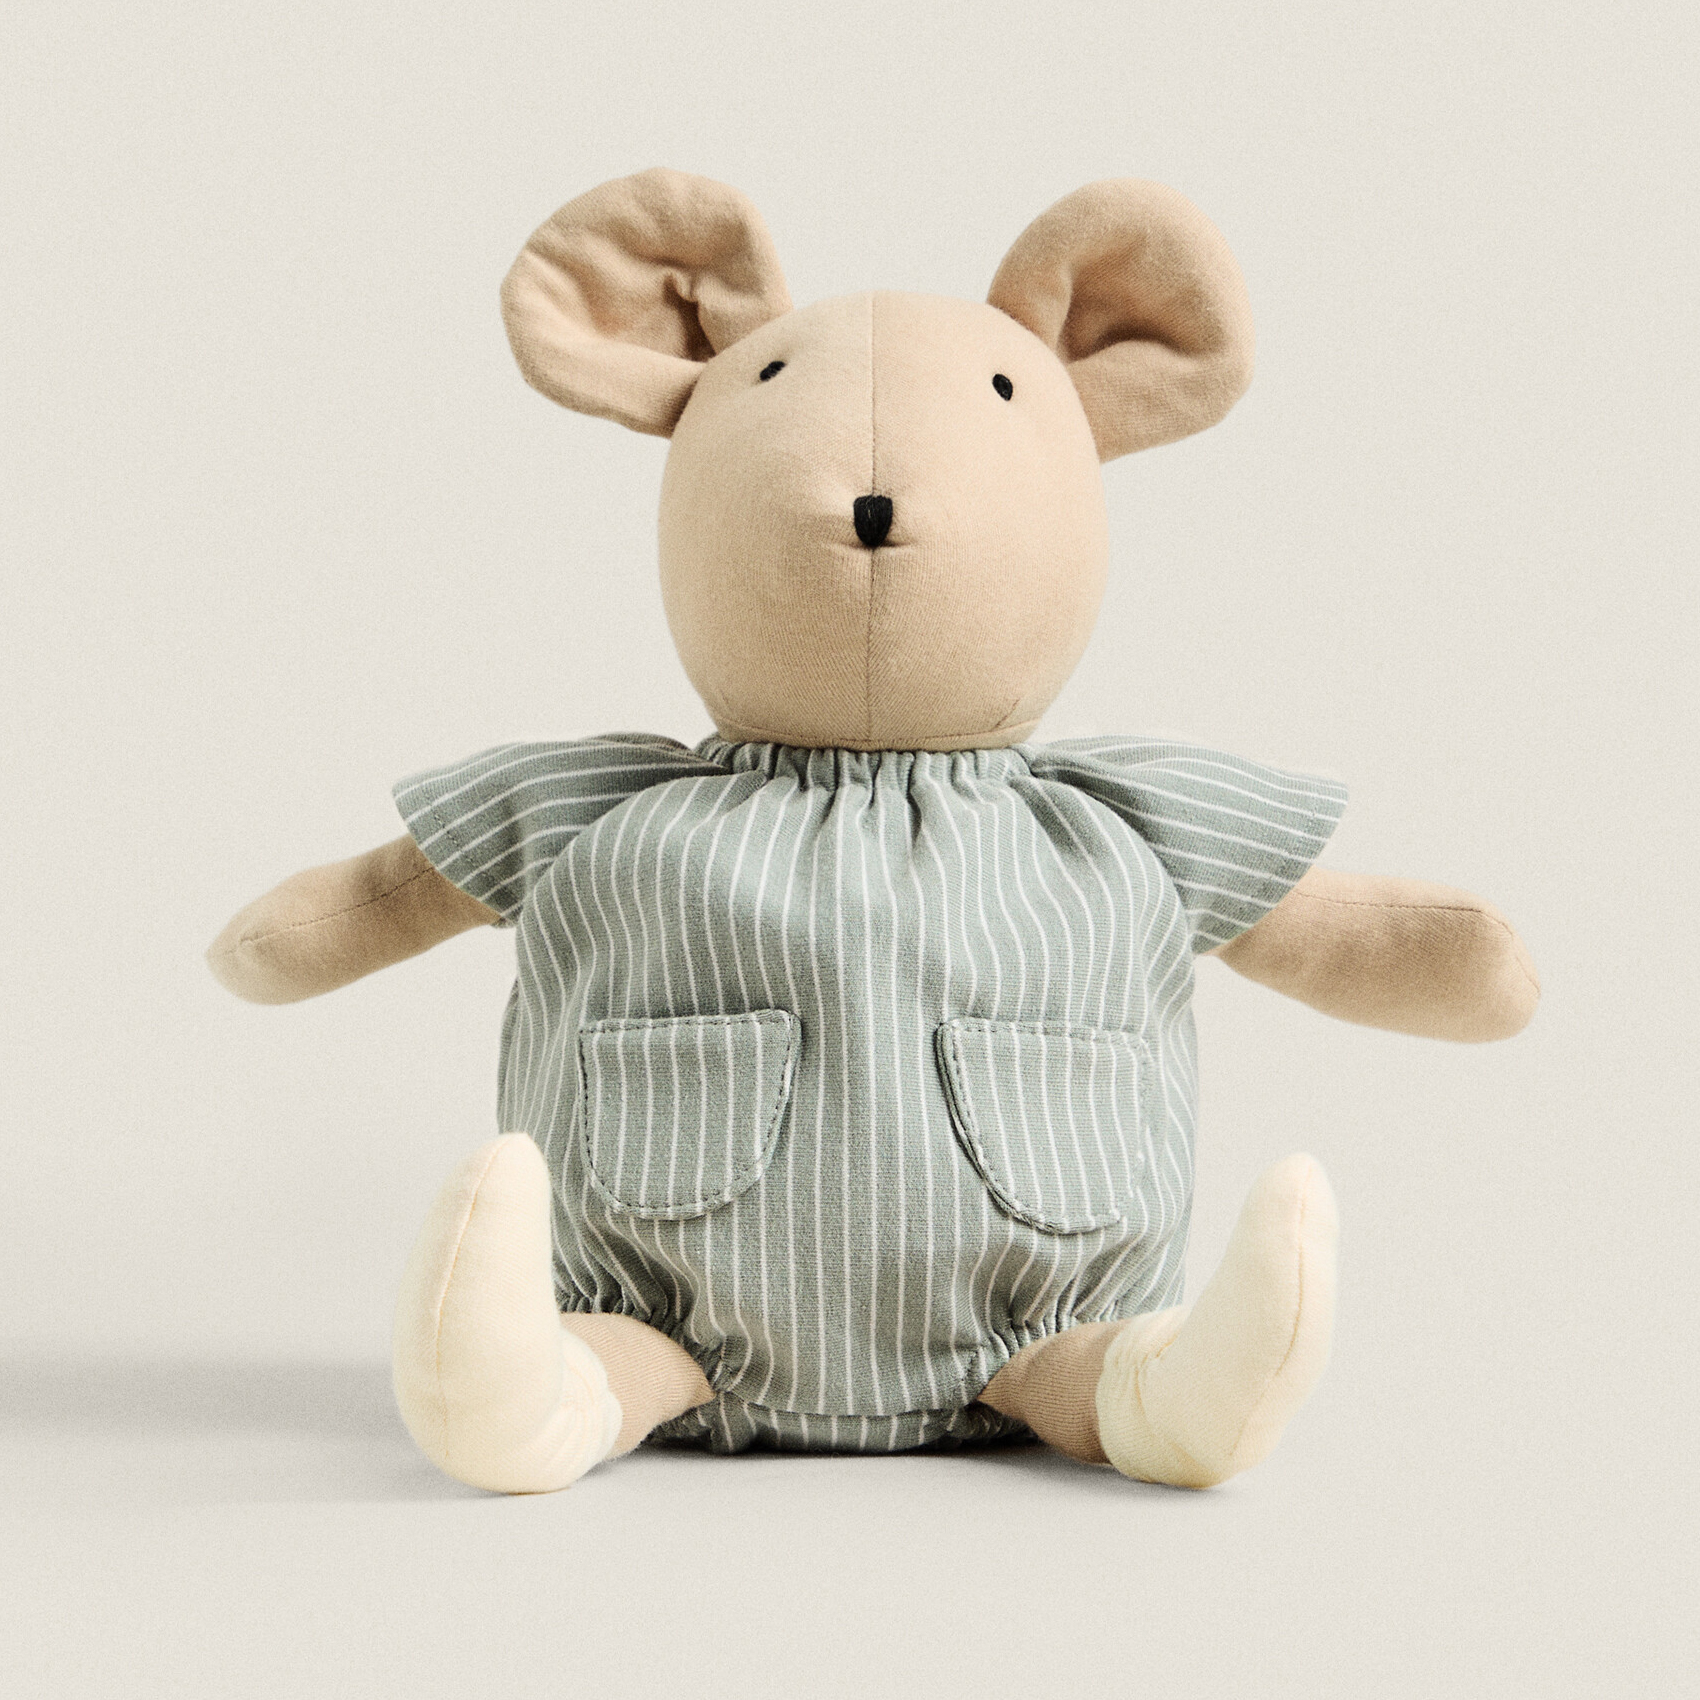 игрушка мягкая мышка в платье 21см фиолетовый 164687 3 Детская мышка мягкая игрушка Zara Home, бежевый